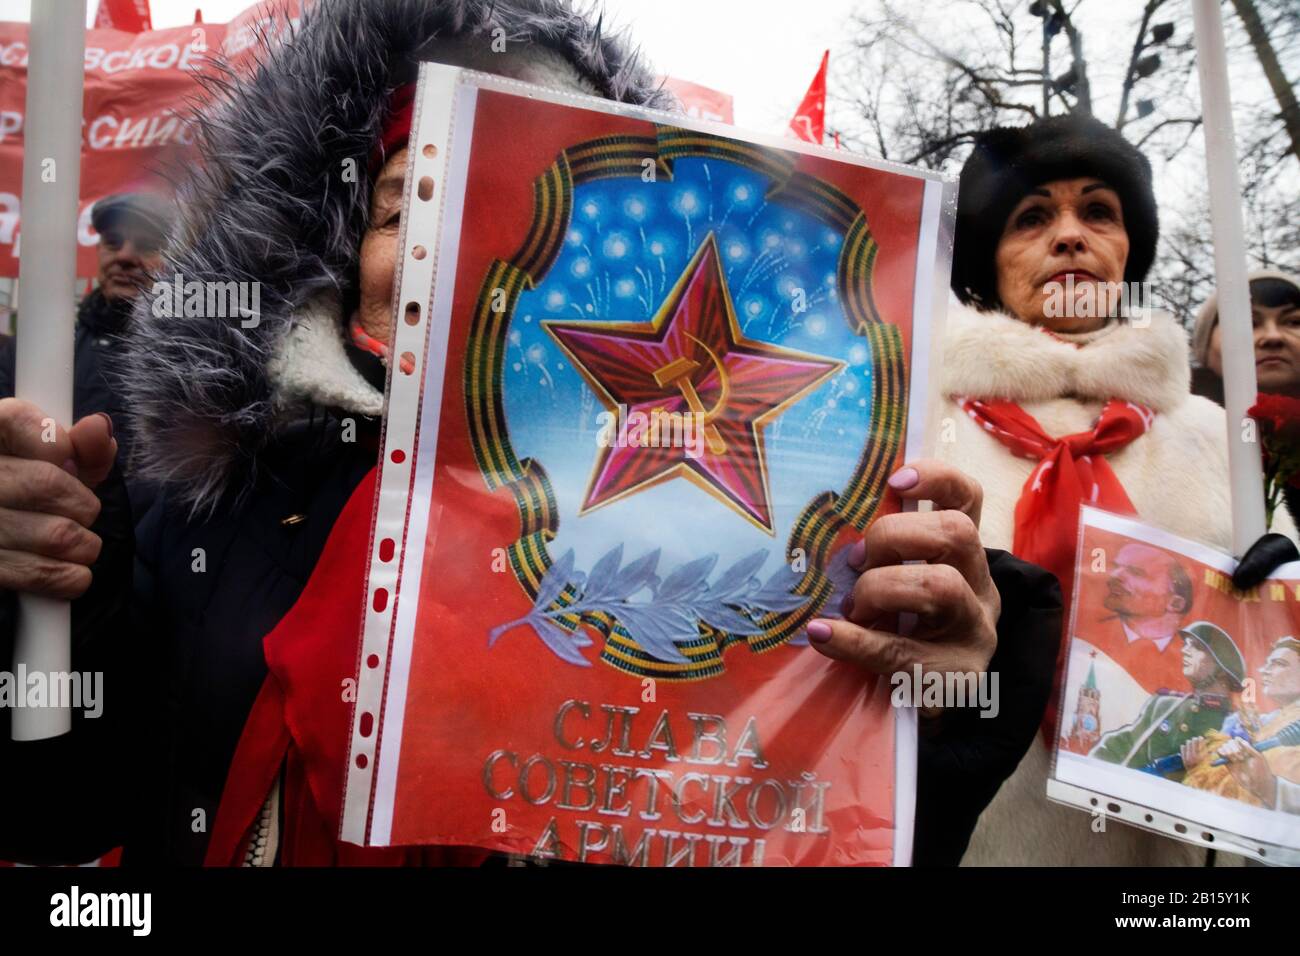 Moskau, Russland. Februar 2020 Teilnehmer einer Kundgebung und eines marsches in Zentral-Moskau anlässlich des 102. Jahrestages der Gründung der sowjetischen Roten Armee und der sowjetischen Marine. Eine Frau hält Plakat mit der sowjetischen Propaganda, die dem Tag der sowjetischen Armee gewidmet ist, mit der Aufschrift "Ruhm der sowjetischen Armee" Stockfoto